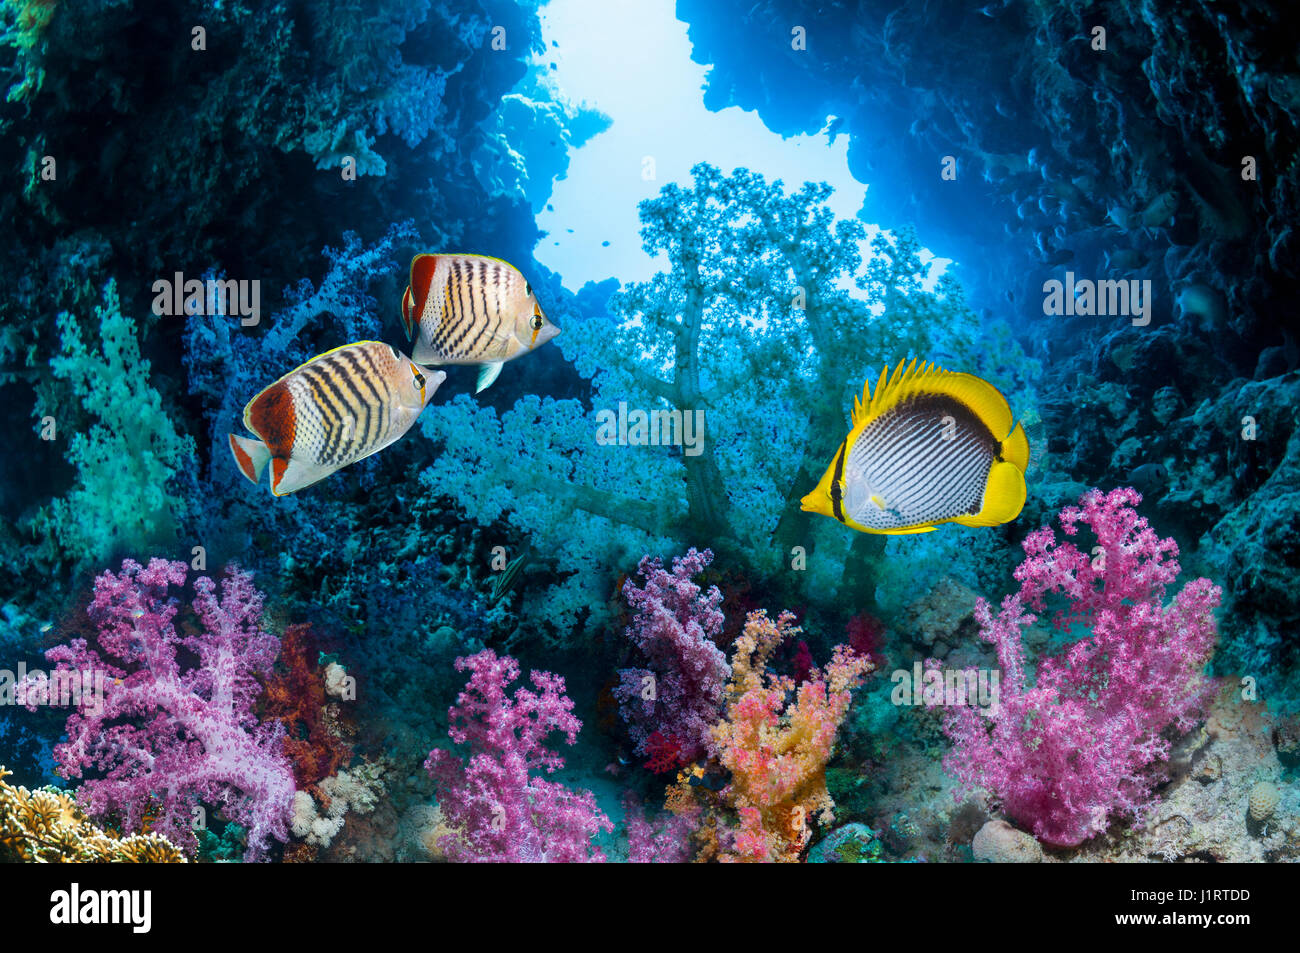 Una coppia di Mare Rosso butterflyfish eritreo [Chaetodon paucifasciatus] e uno spot-tail butterflyfish [Chaetodon ocellicauda] nuotare tra i coralli molli Foto Stock